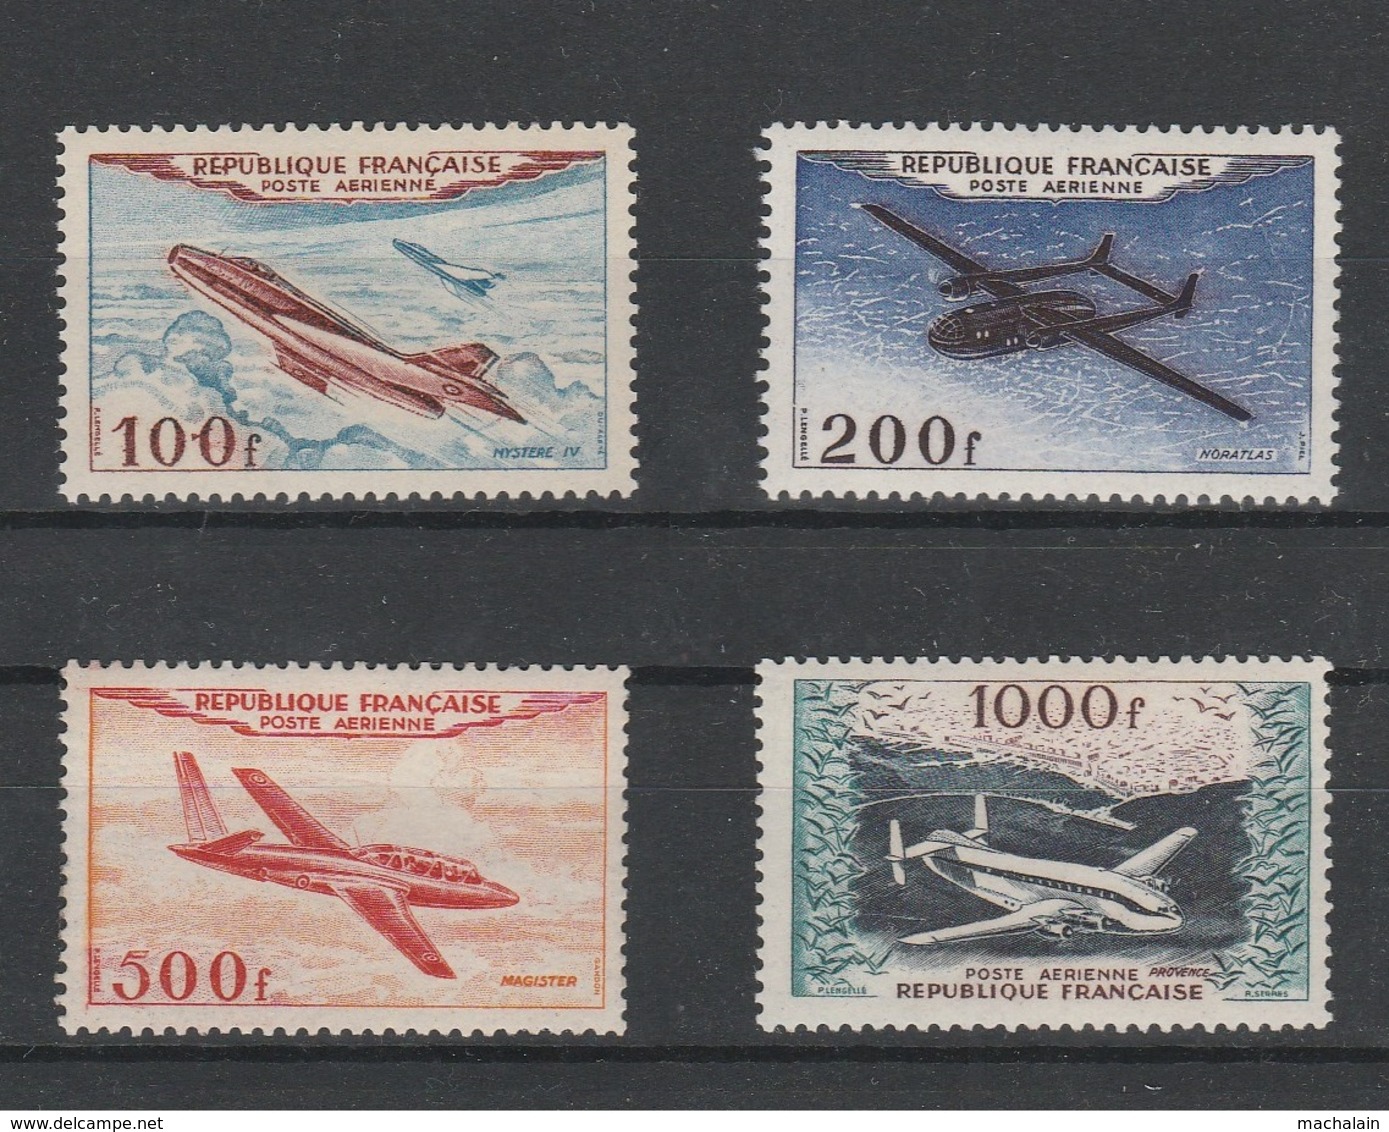 Collection Poste Aérienne n° 5 à 41 (sauf 14 et 15) tous neufs** TBE - côte = 1352.00€